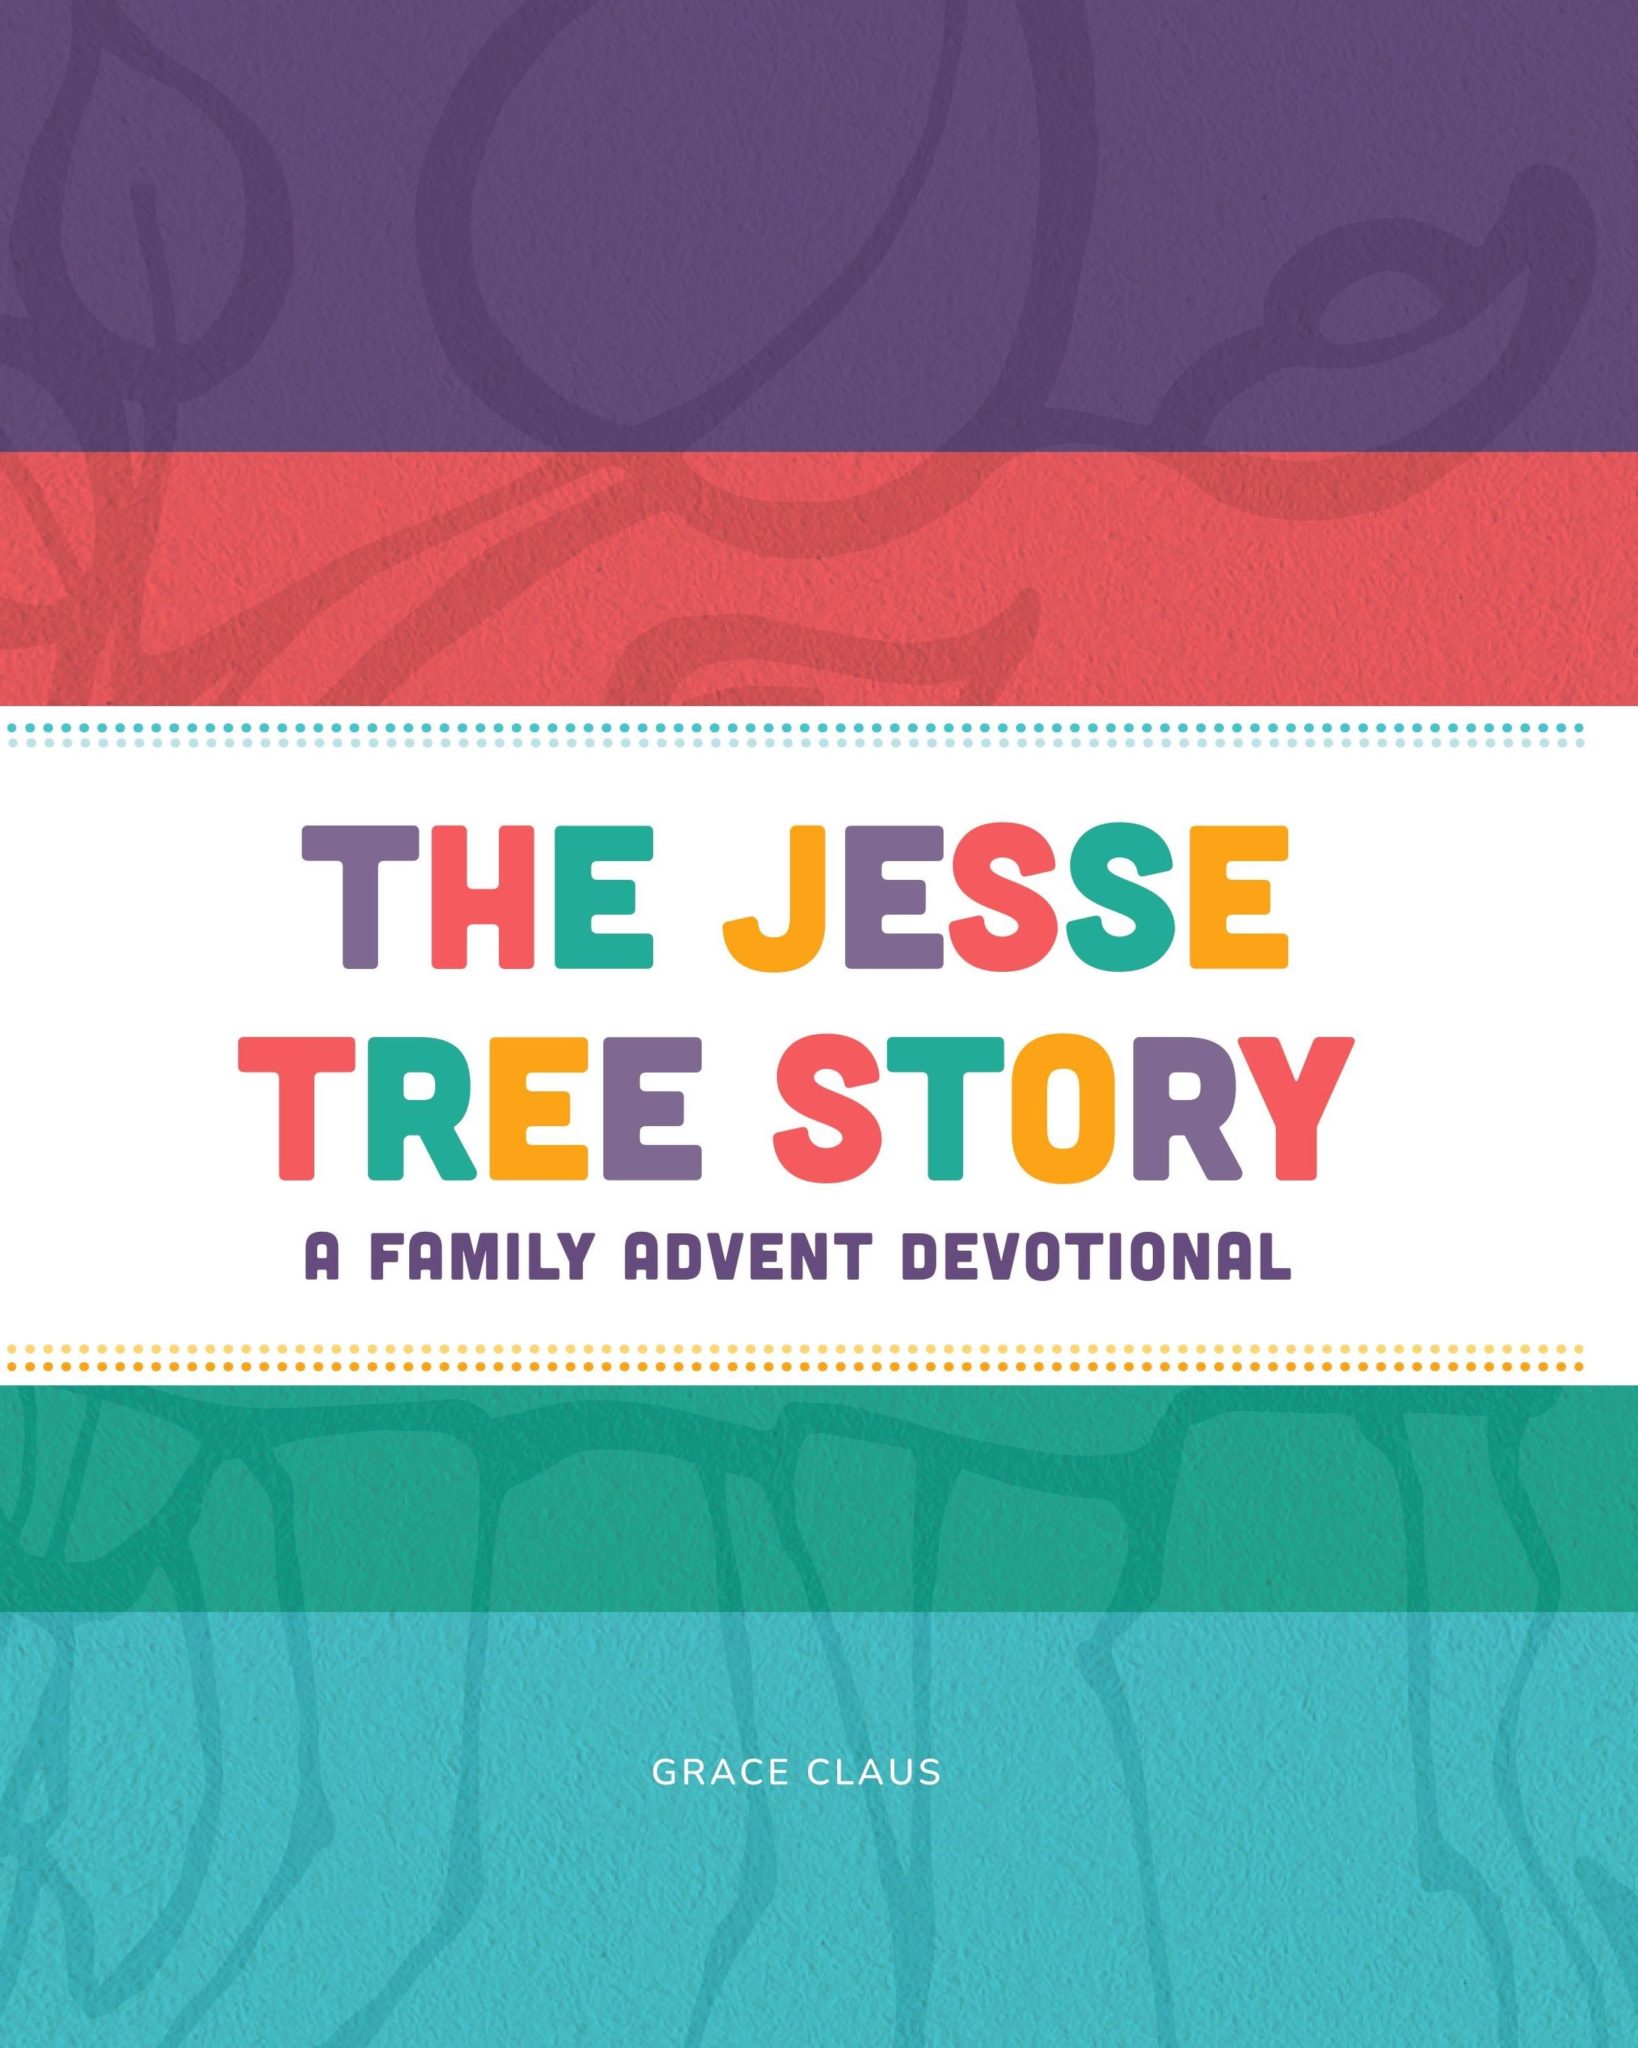 Portada del devocionario familiar de Adviento La Historia del Árbol de Jesse